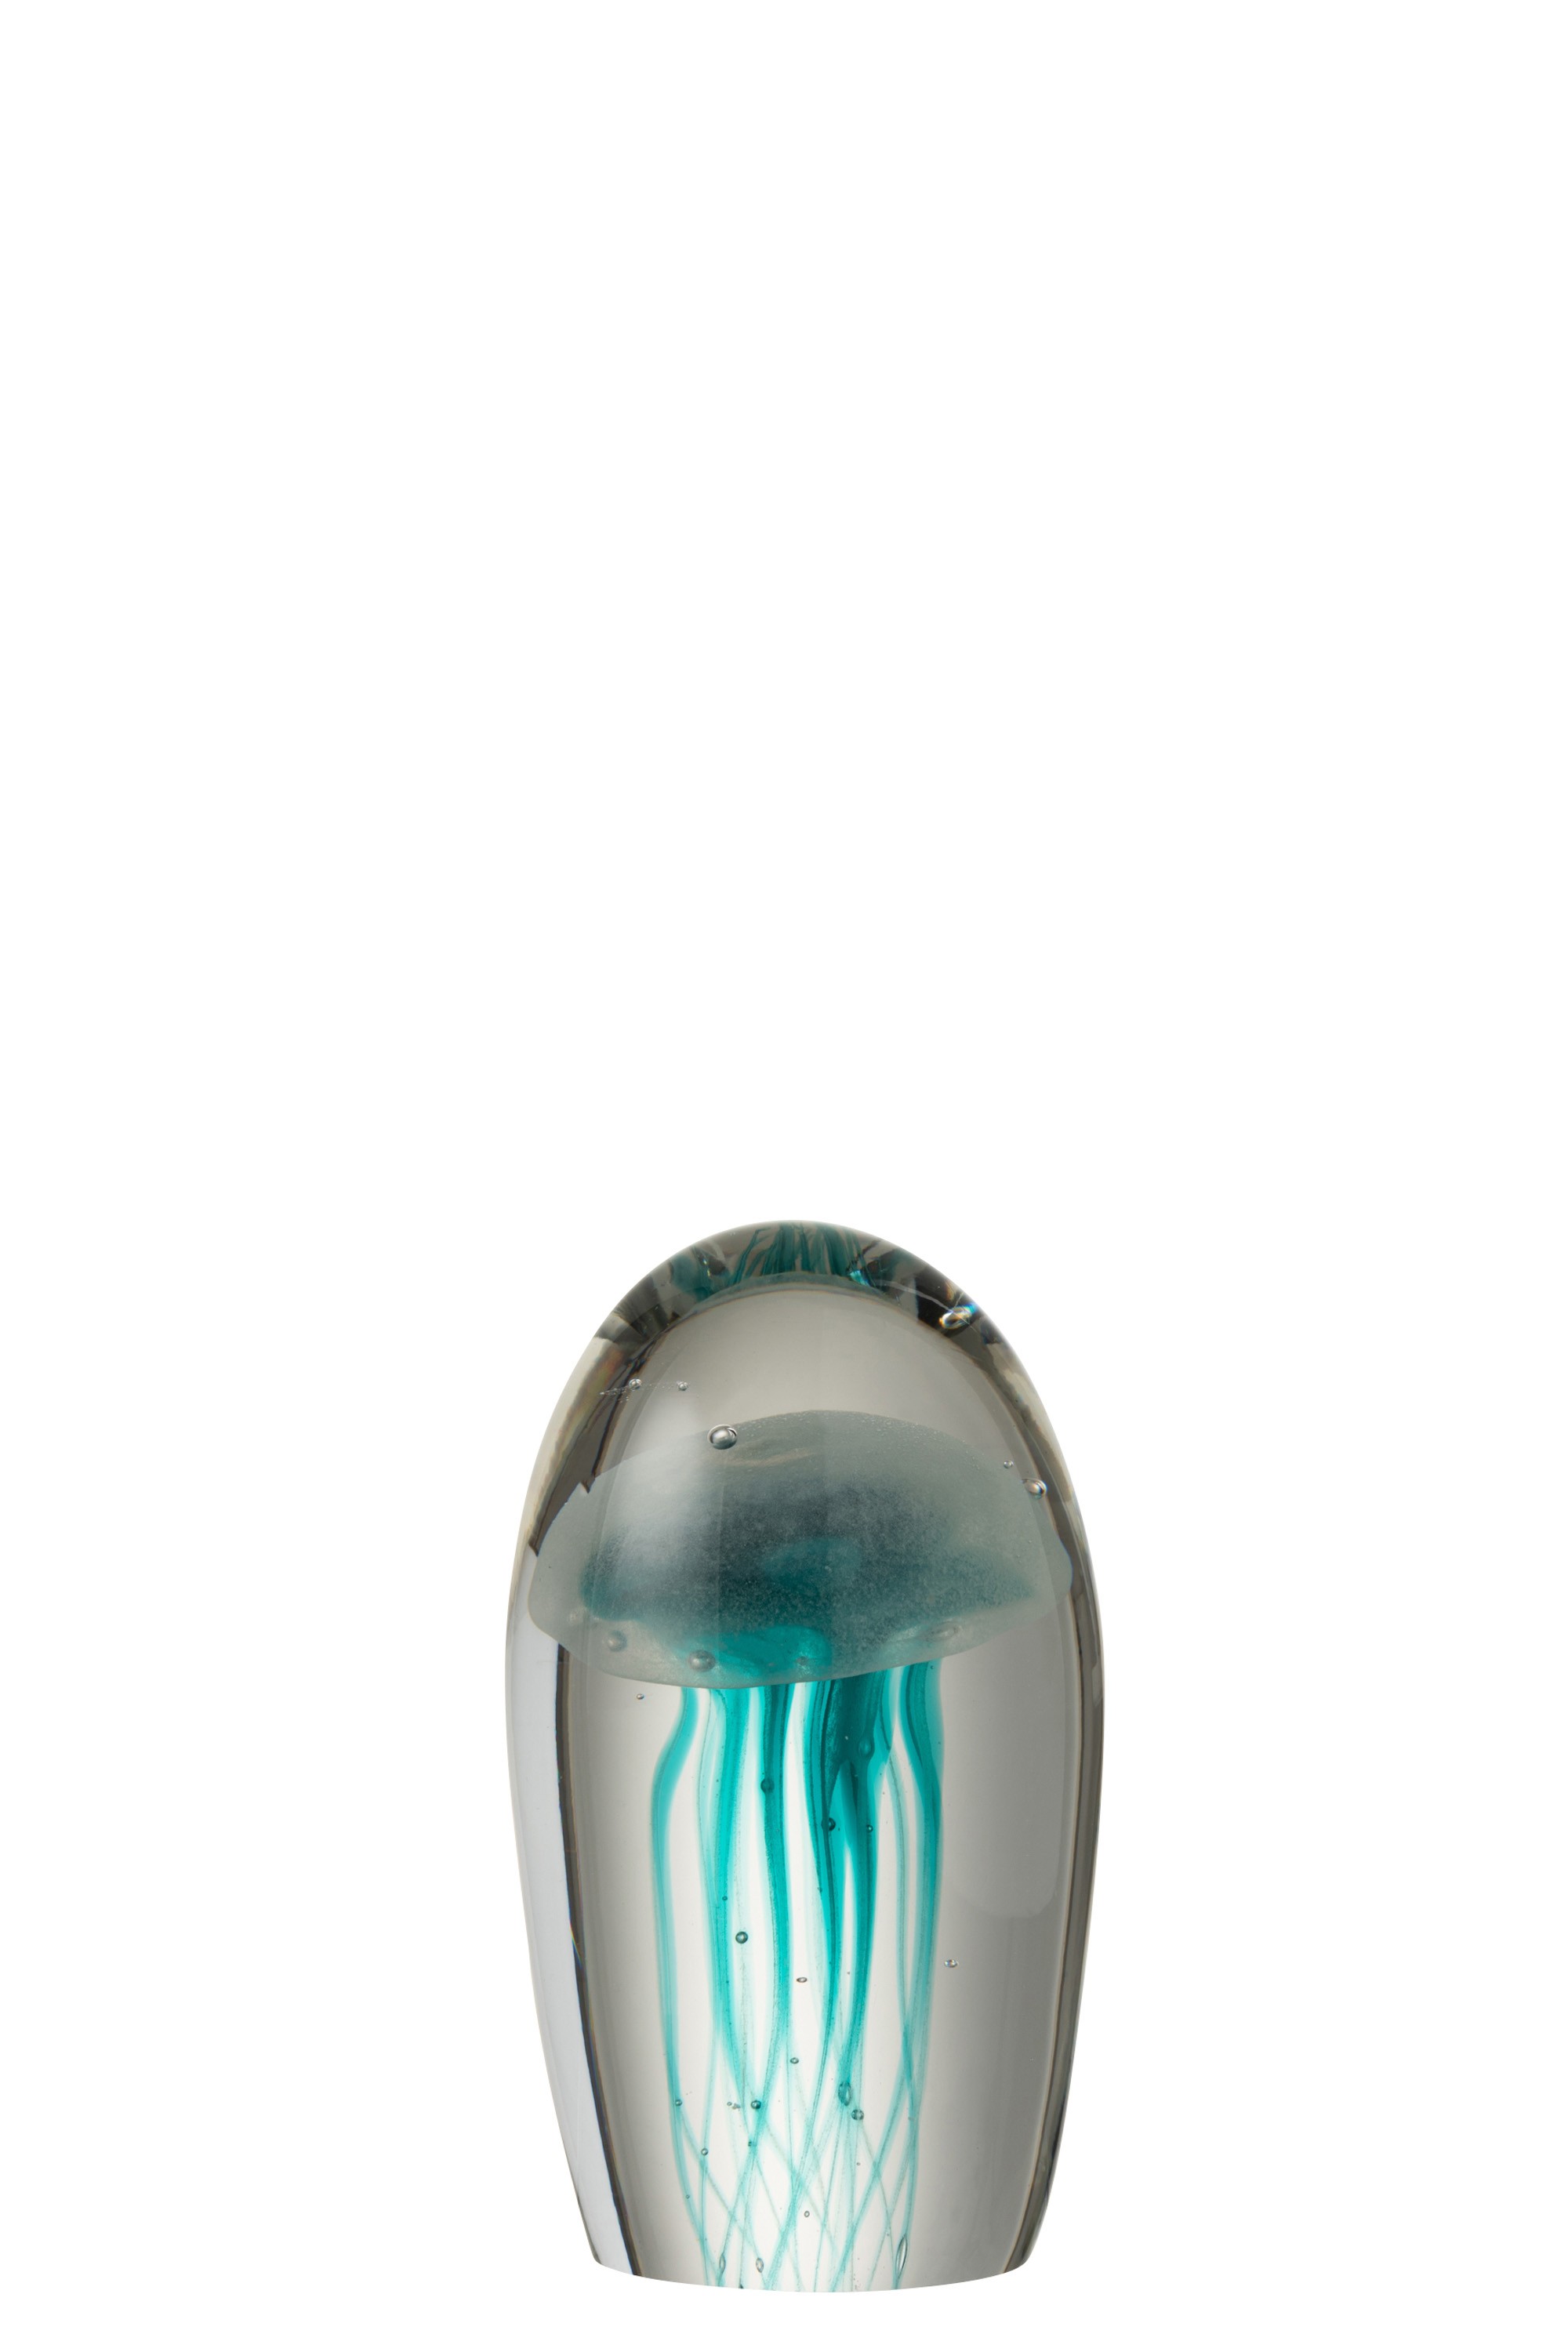 Skleněné těžítko s modrou medúzou S - 9,5*9,5*17 cm 3752